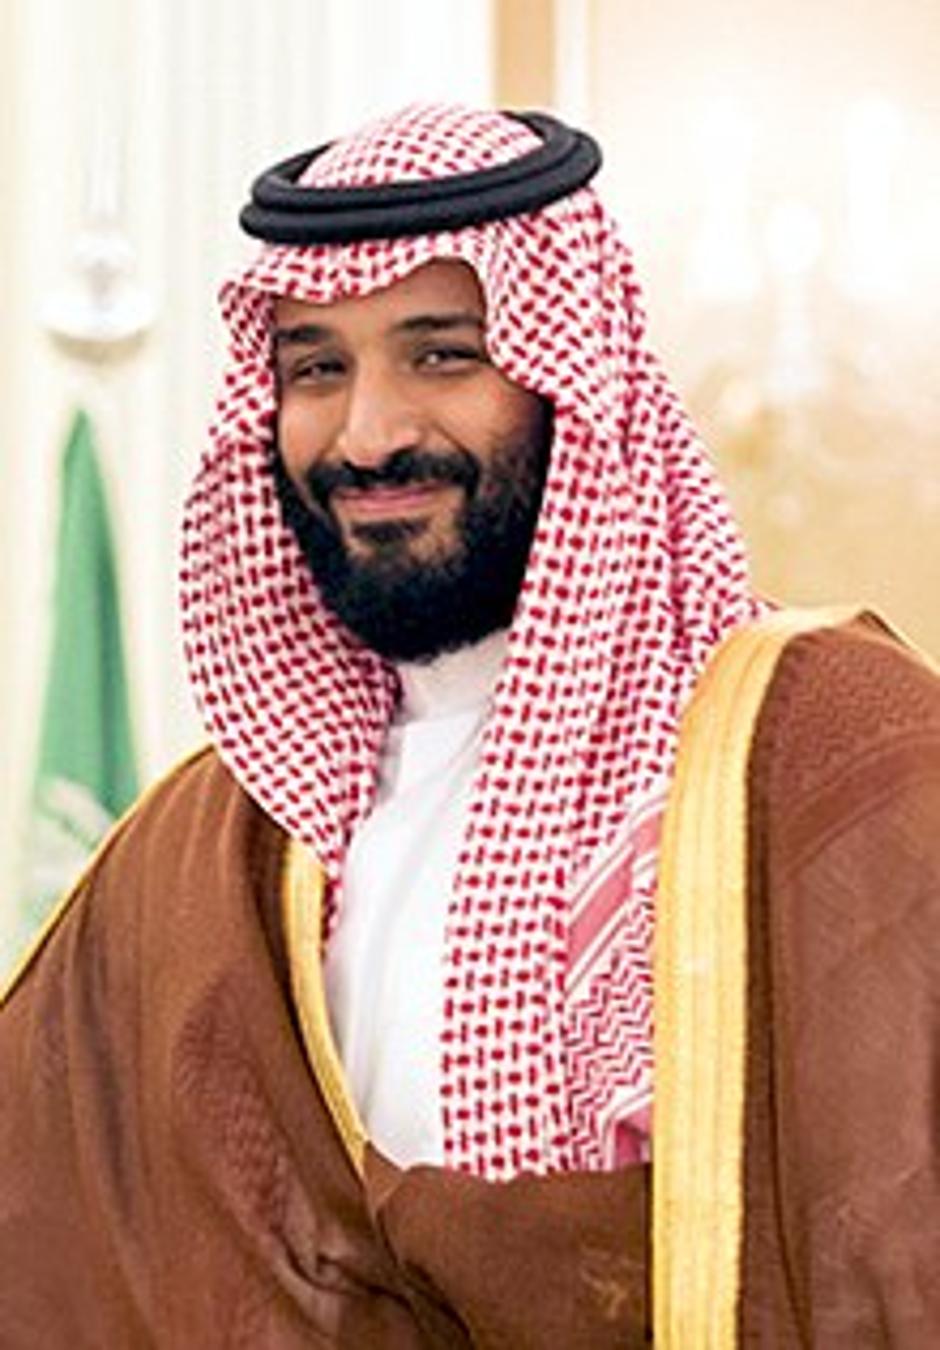 Saudijski princ Mohammad bin Salman Al Saud želi modernizirati kraljevinu | Author: Wikipedia